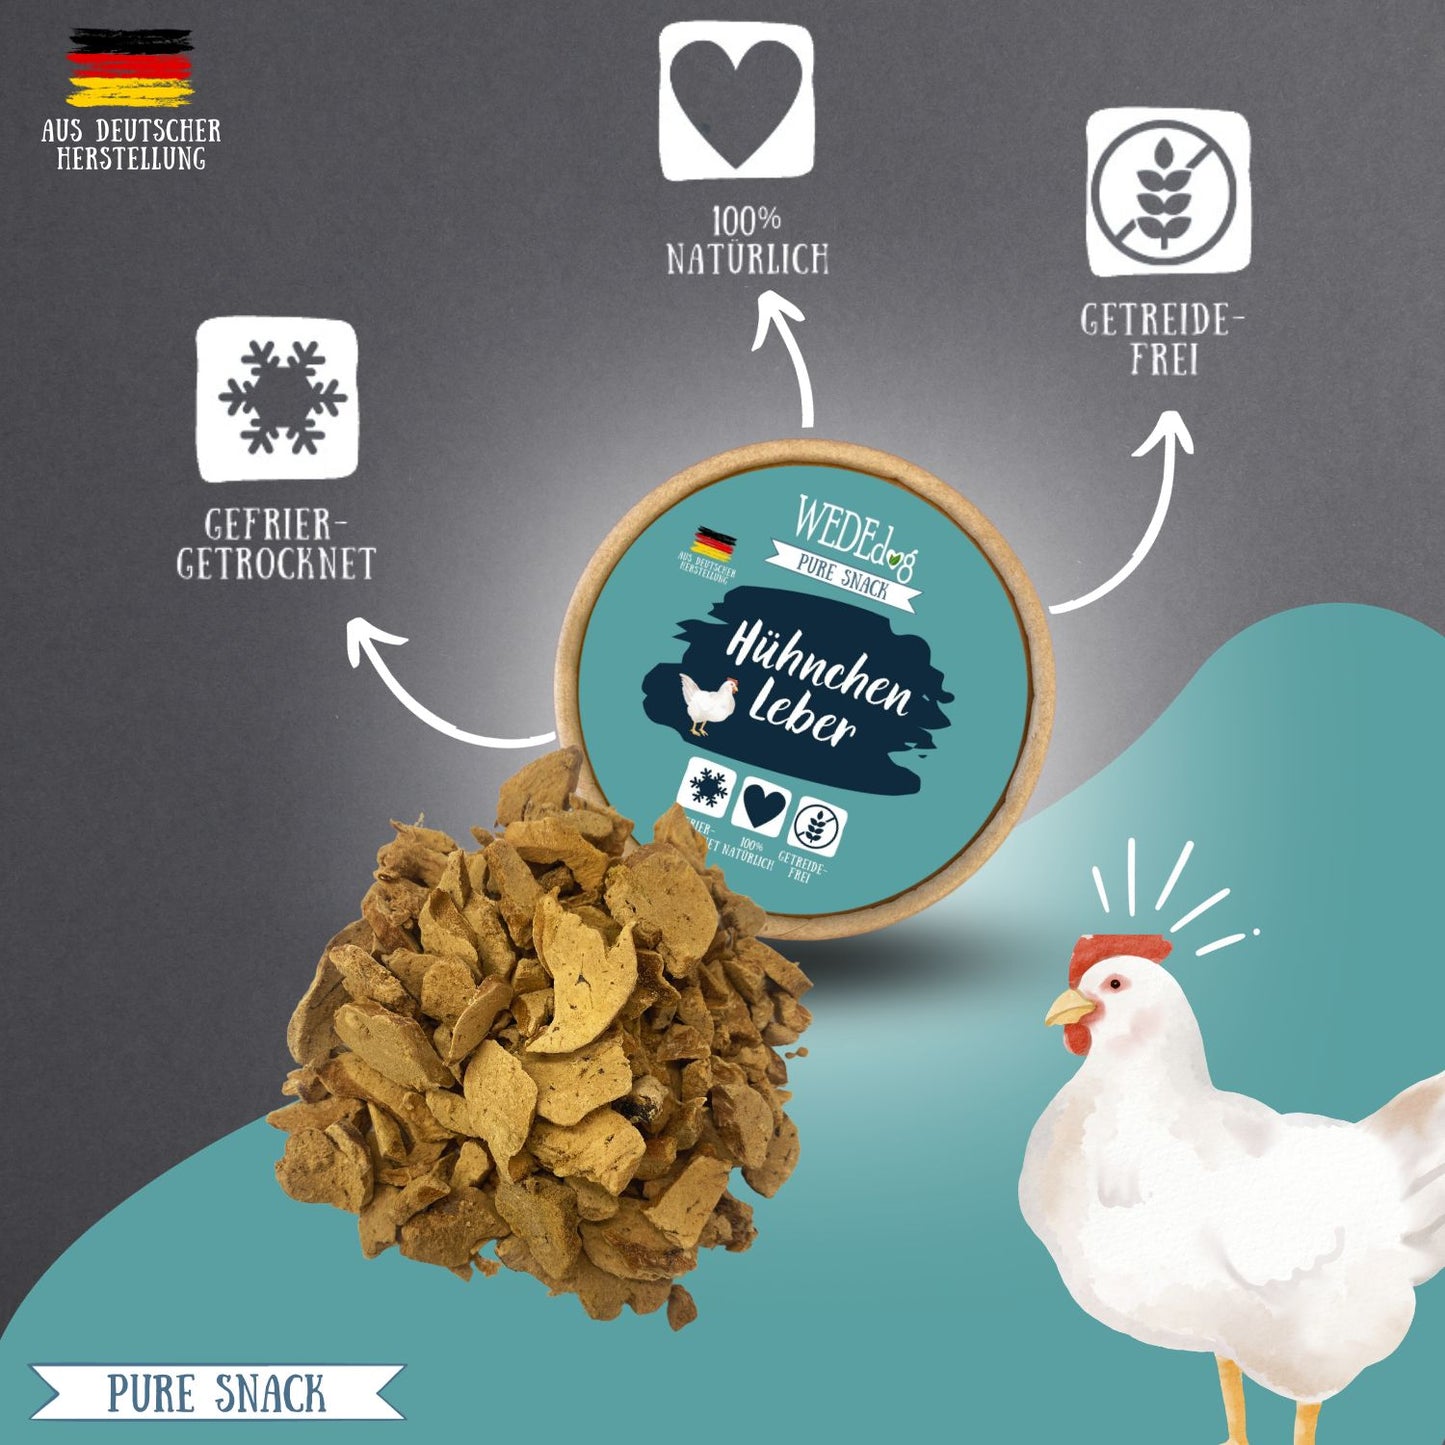 WEDEdog Pure Snack: Gefriergetrocknete Hühnchen Leber - Geschmacksintensiv & Qualität aus der Natur